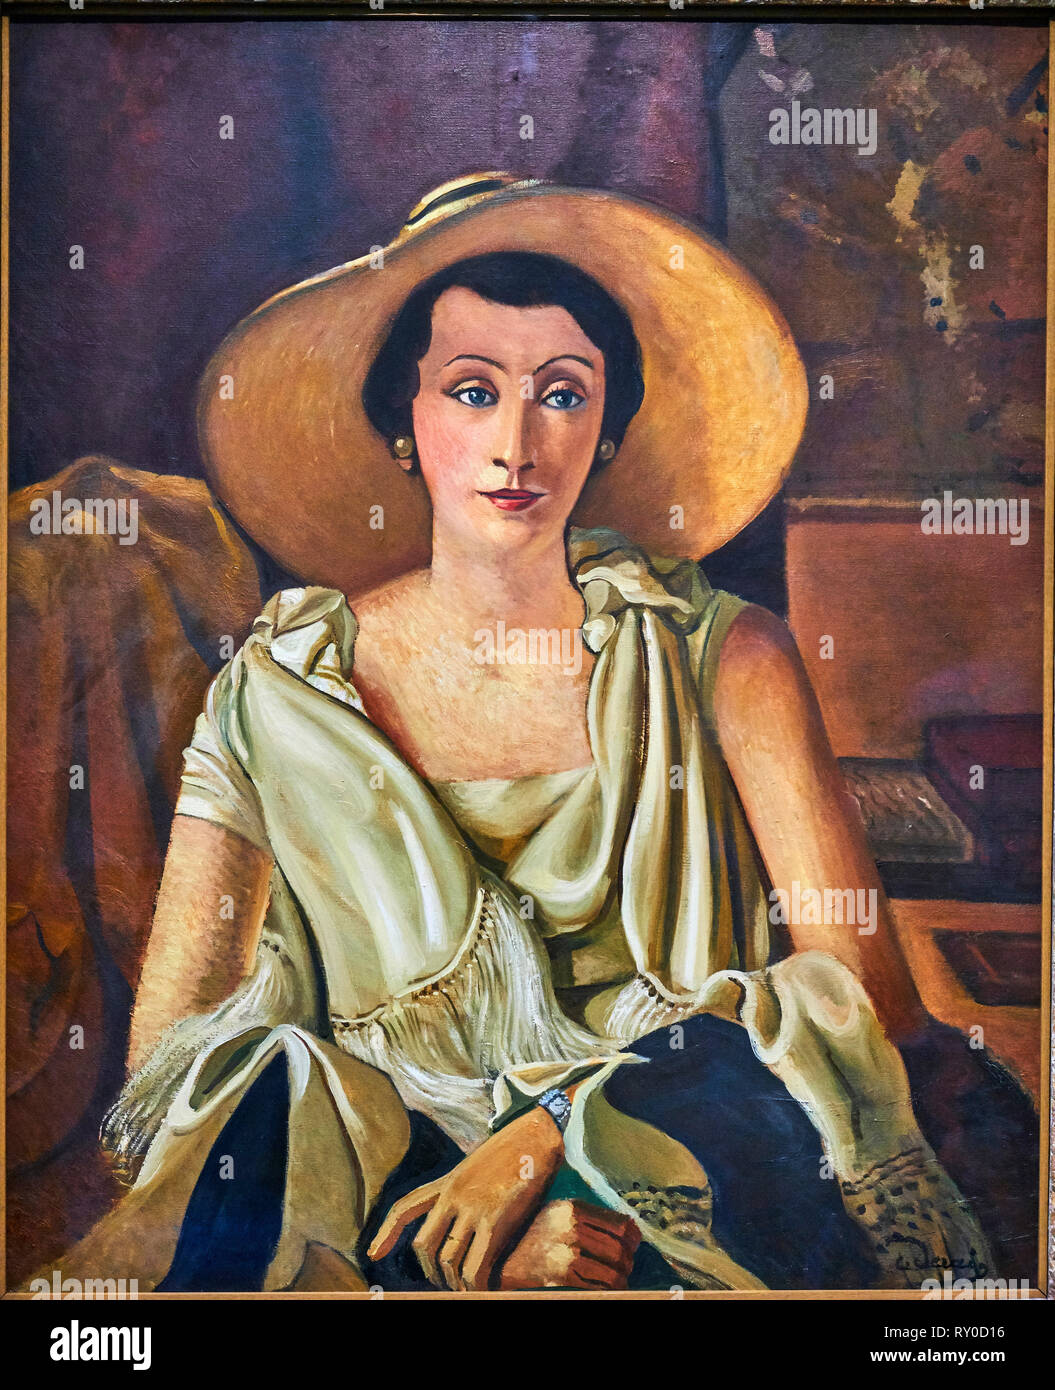 France, Paris, les Tuileries, museum of Orangerie, portrait of Madame Paul Guillaume au grand chapeau by André Derain, 1928 Stock Photo